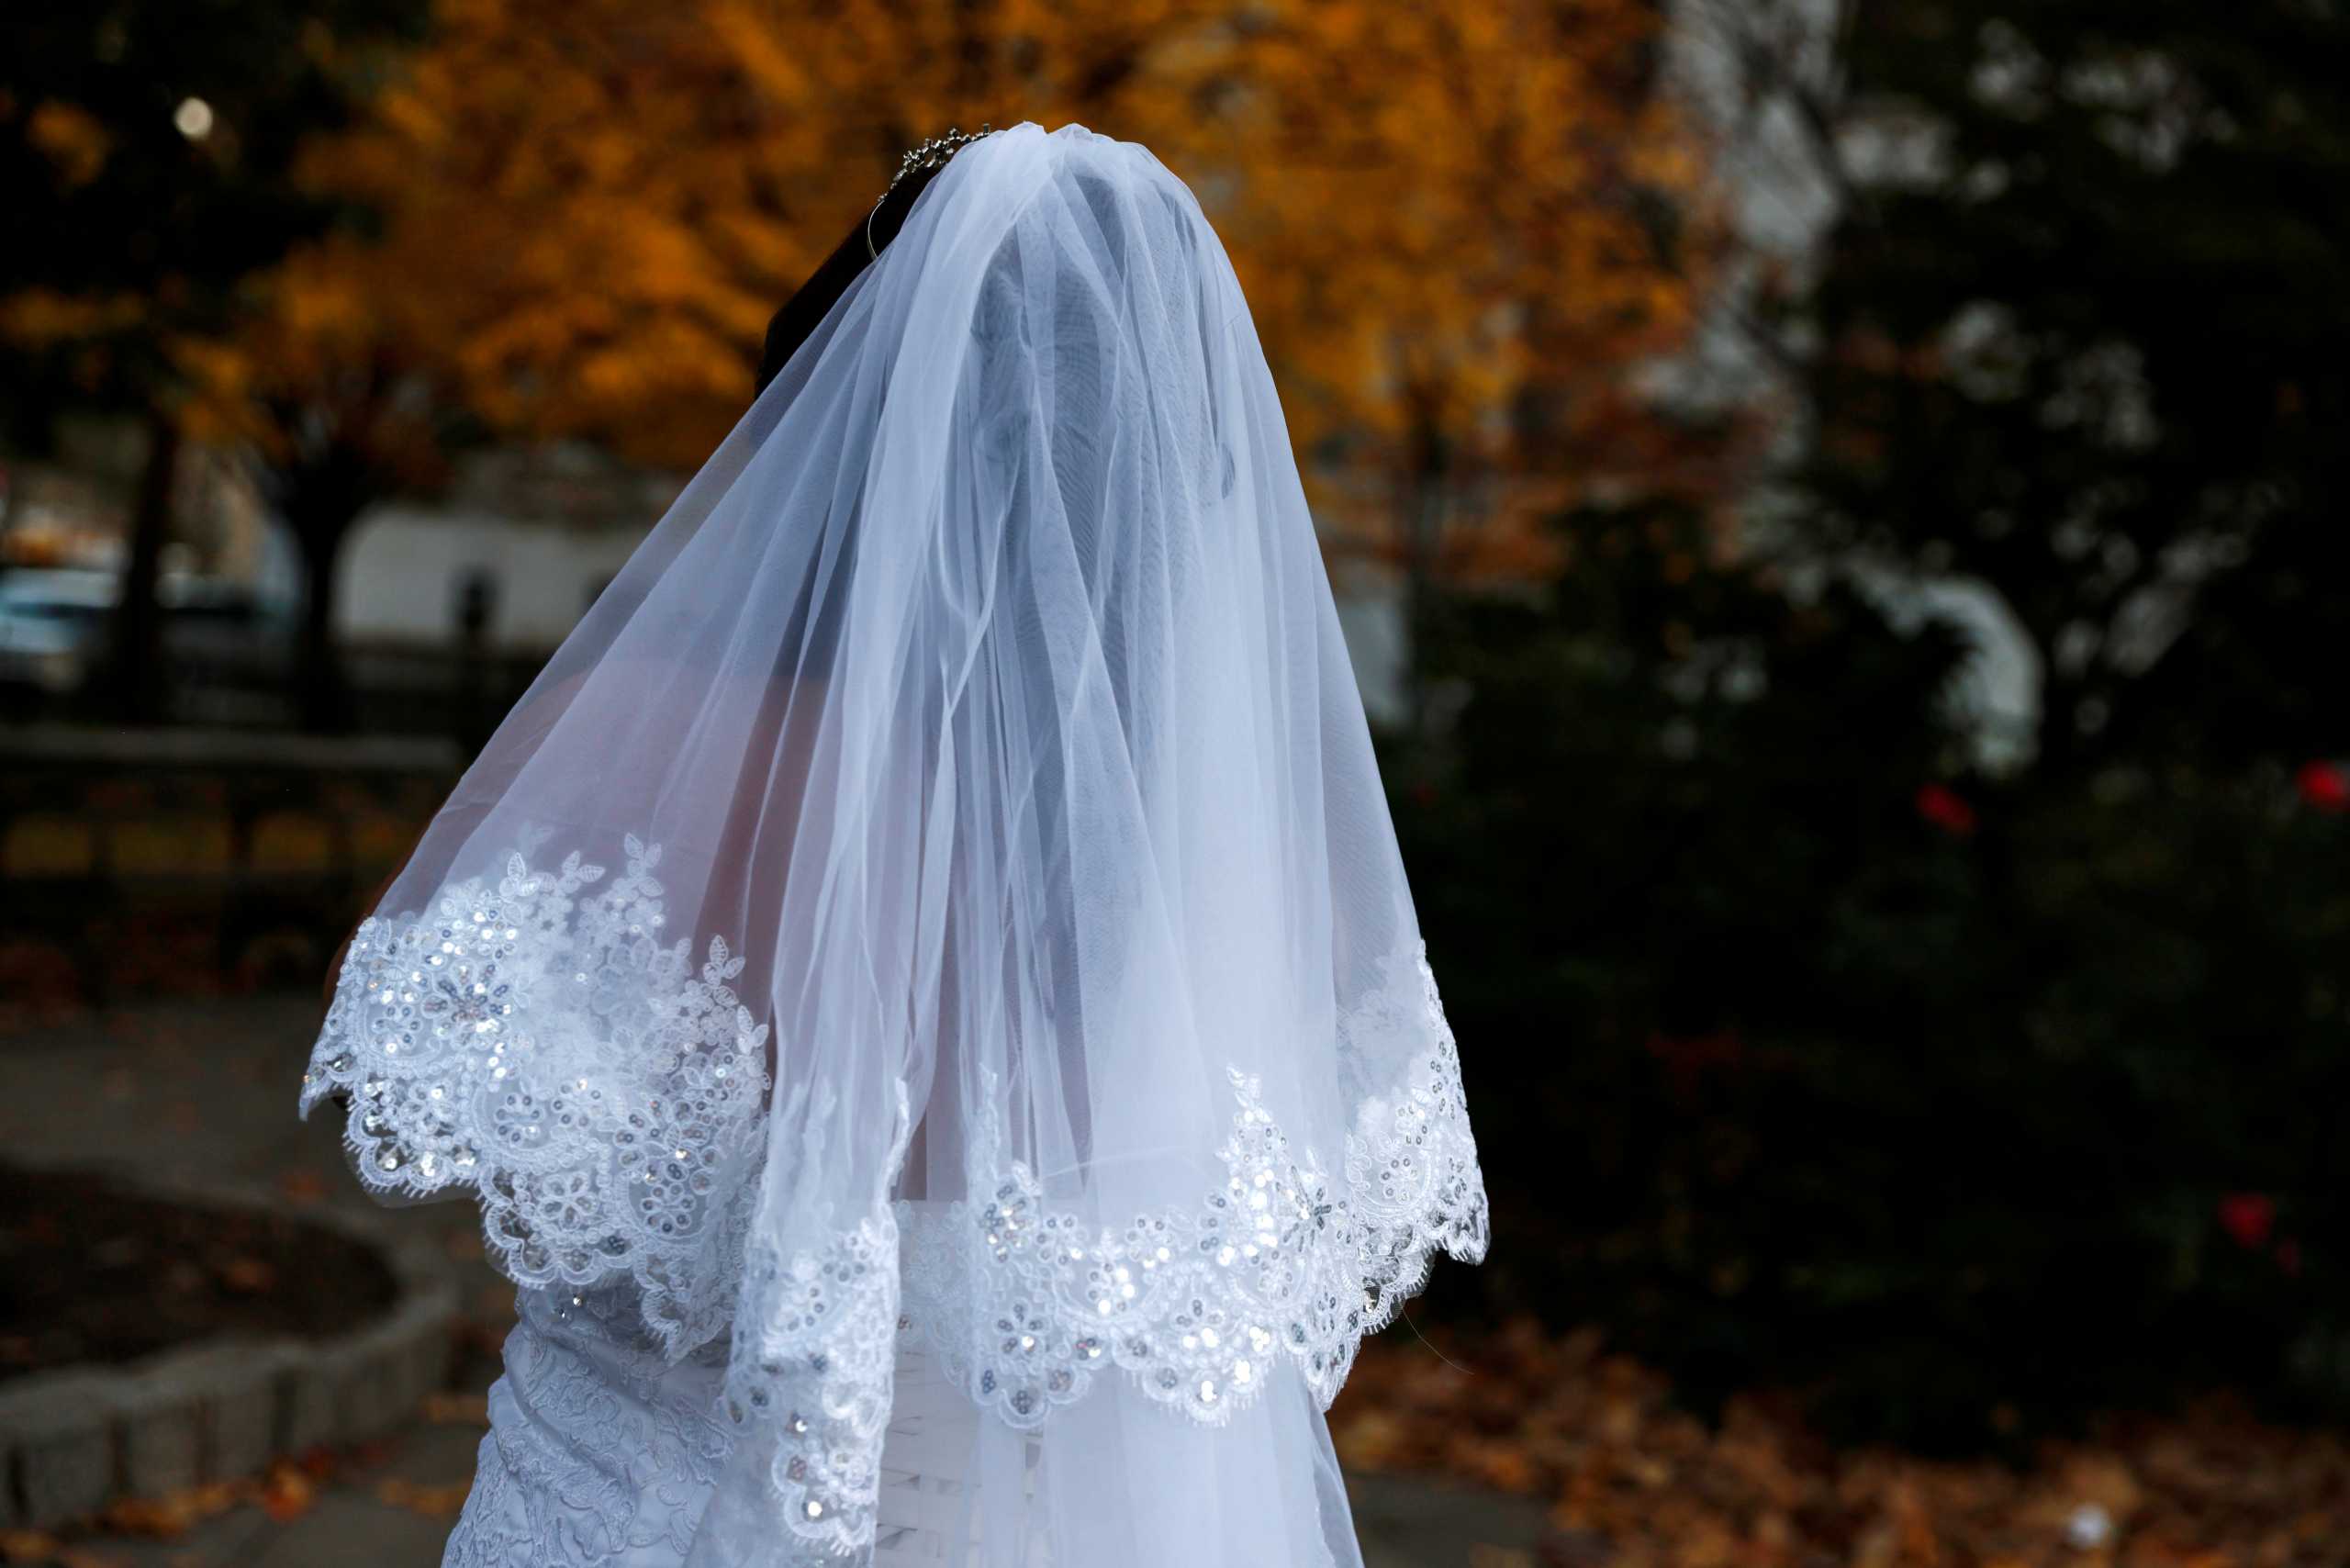 Ιράκ: Στα δικαστήρια μητέρα 12χρονης για να ακυρώσει τον θρησκευτικό γάμο της